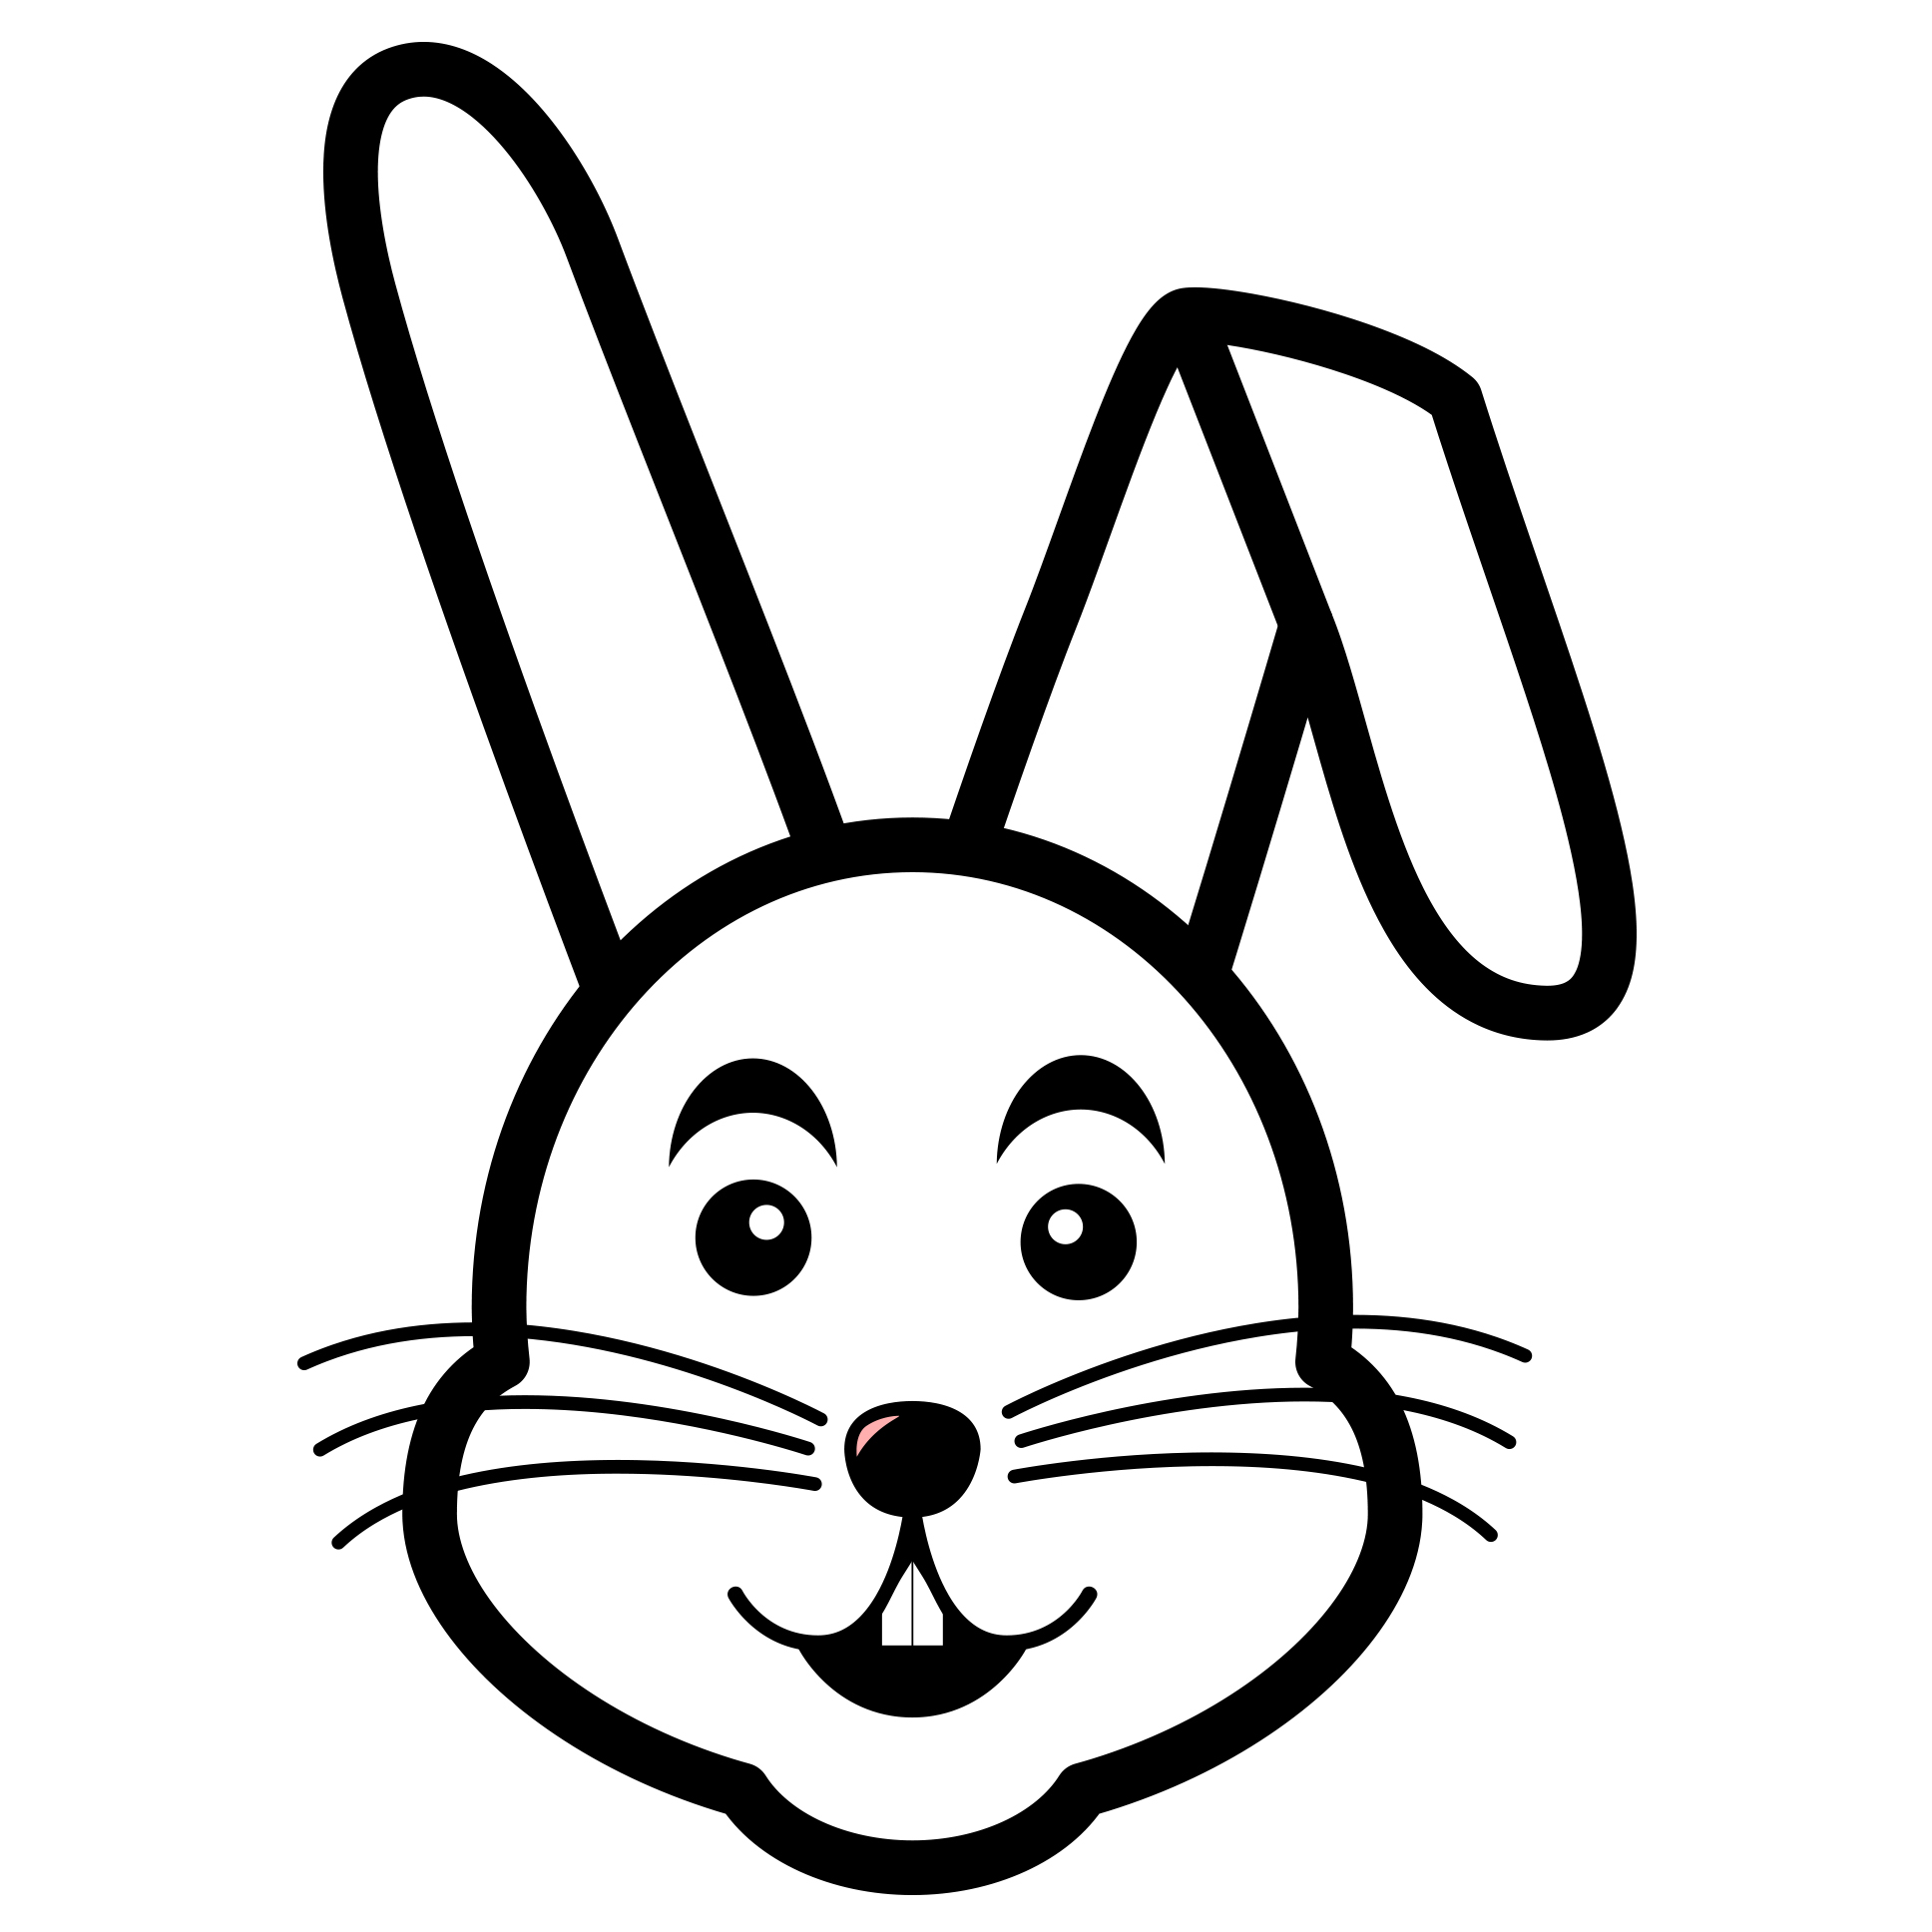 예쁜 토끼캐릭터 이미지 색칠하기 도안 및 귀여운 토끼그림 그리기